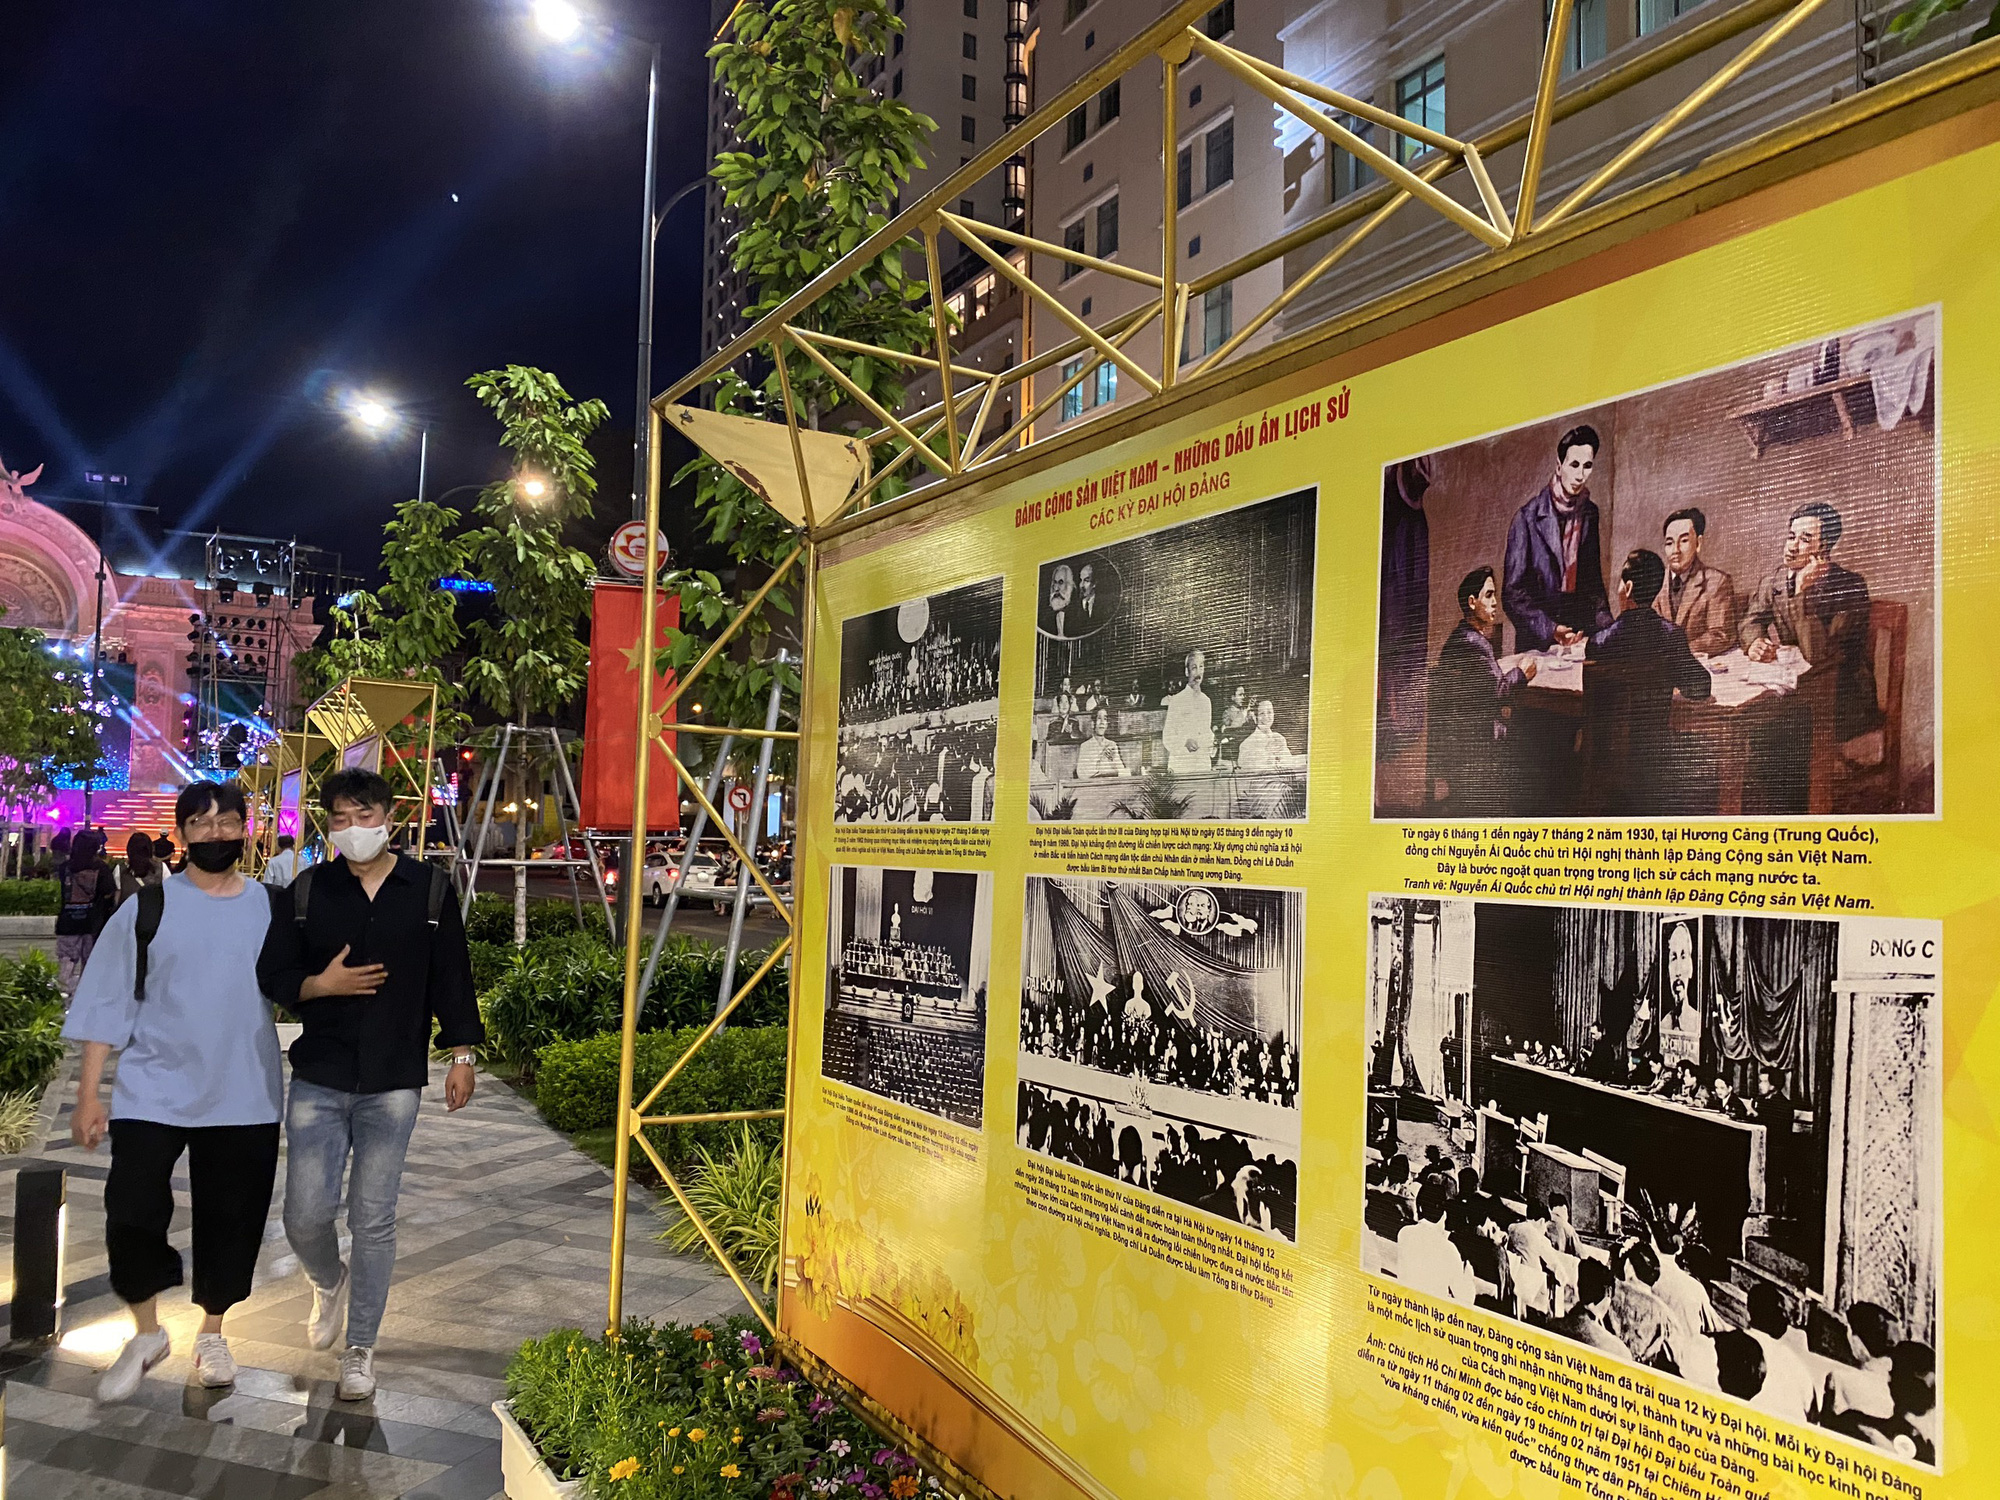 Đảng Cộng sản Việt Nam đã có một lịch sử lâu dài và phát triển không ngừng. Những hình ảnh, tài liệu về Đảng chính là cách để hiểu rõ hơn về một trong những tổ chức quan trọng nhất của đất nước ta. Click xem hình ảnh để có cái nhìn sâu sắc hơn về Đảng Cộng sản Việt Nam.